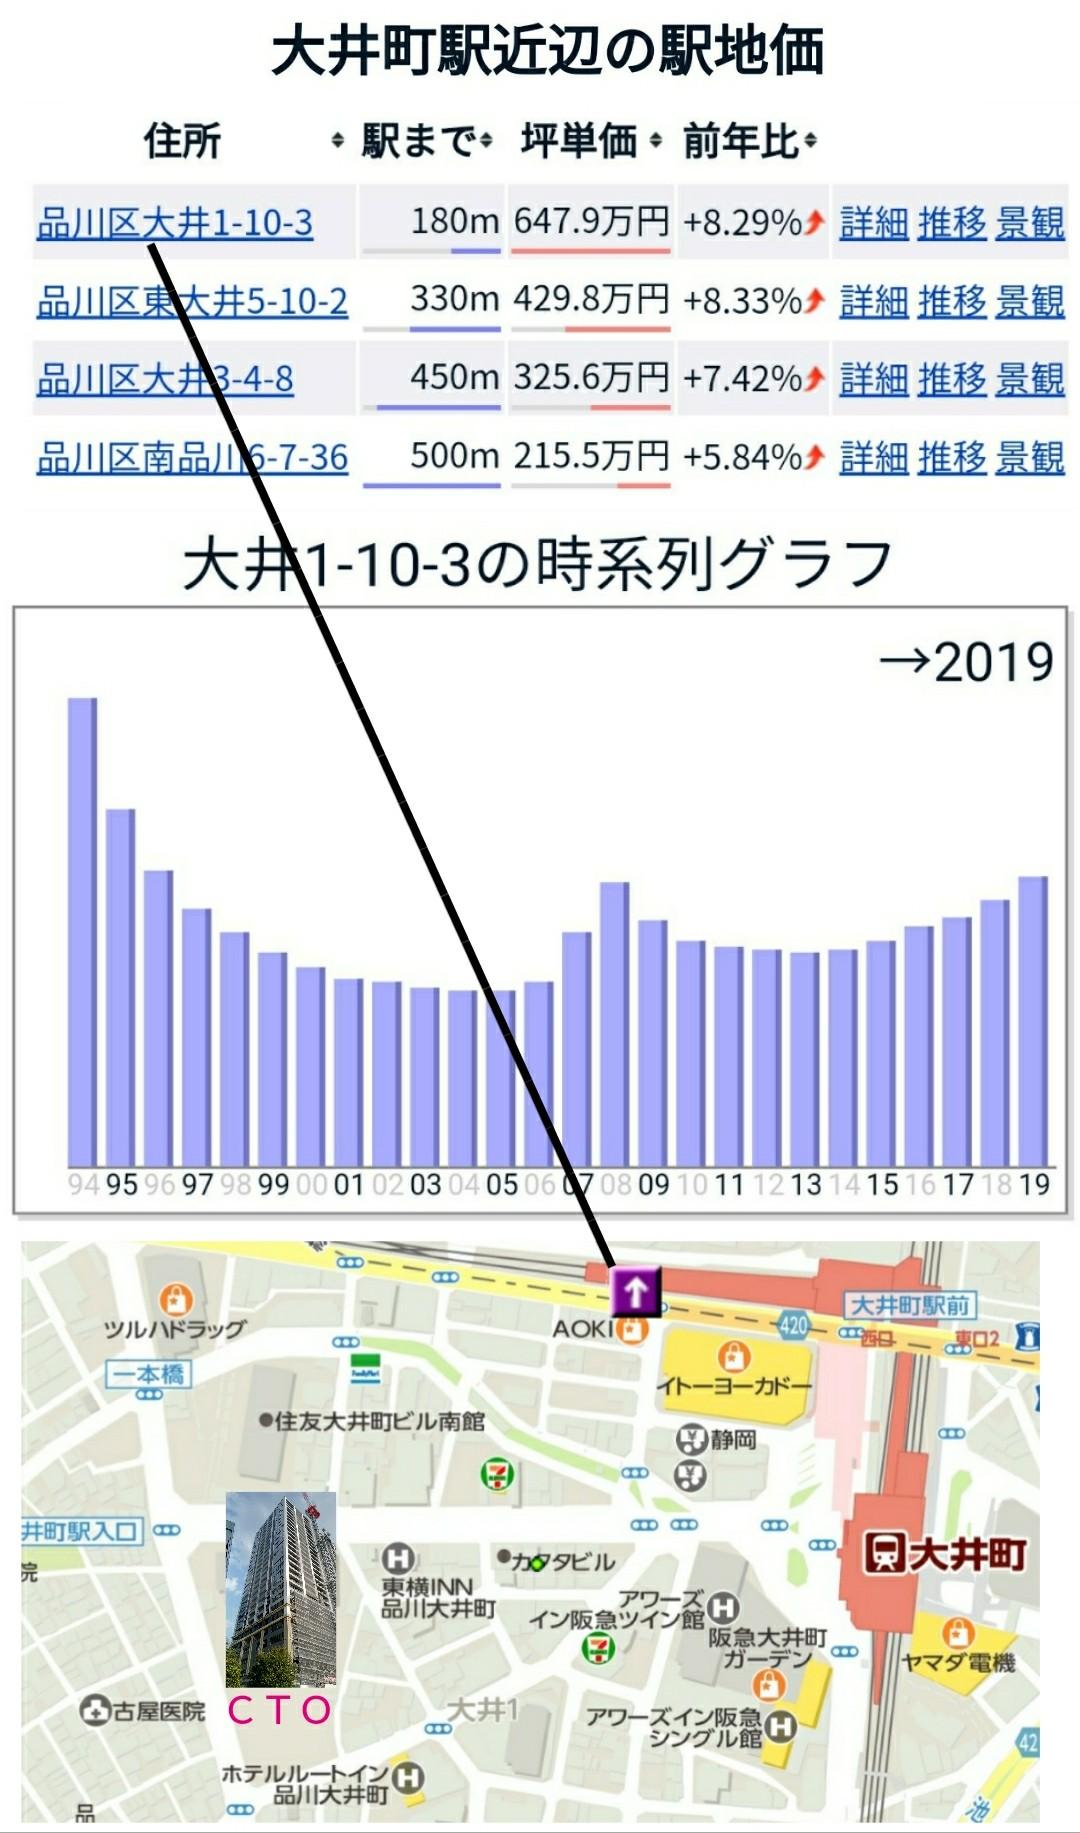 公示地価は引き続き東京都平均と連動してい...